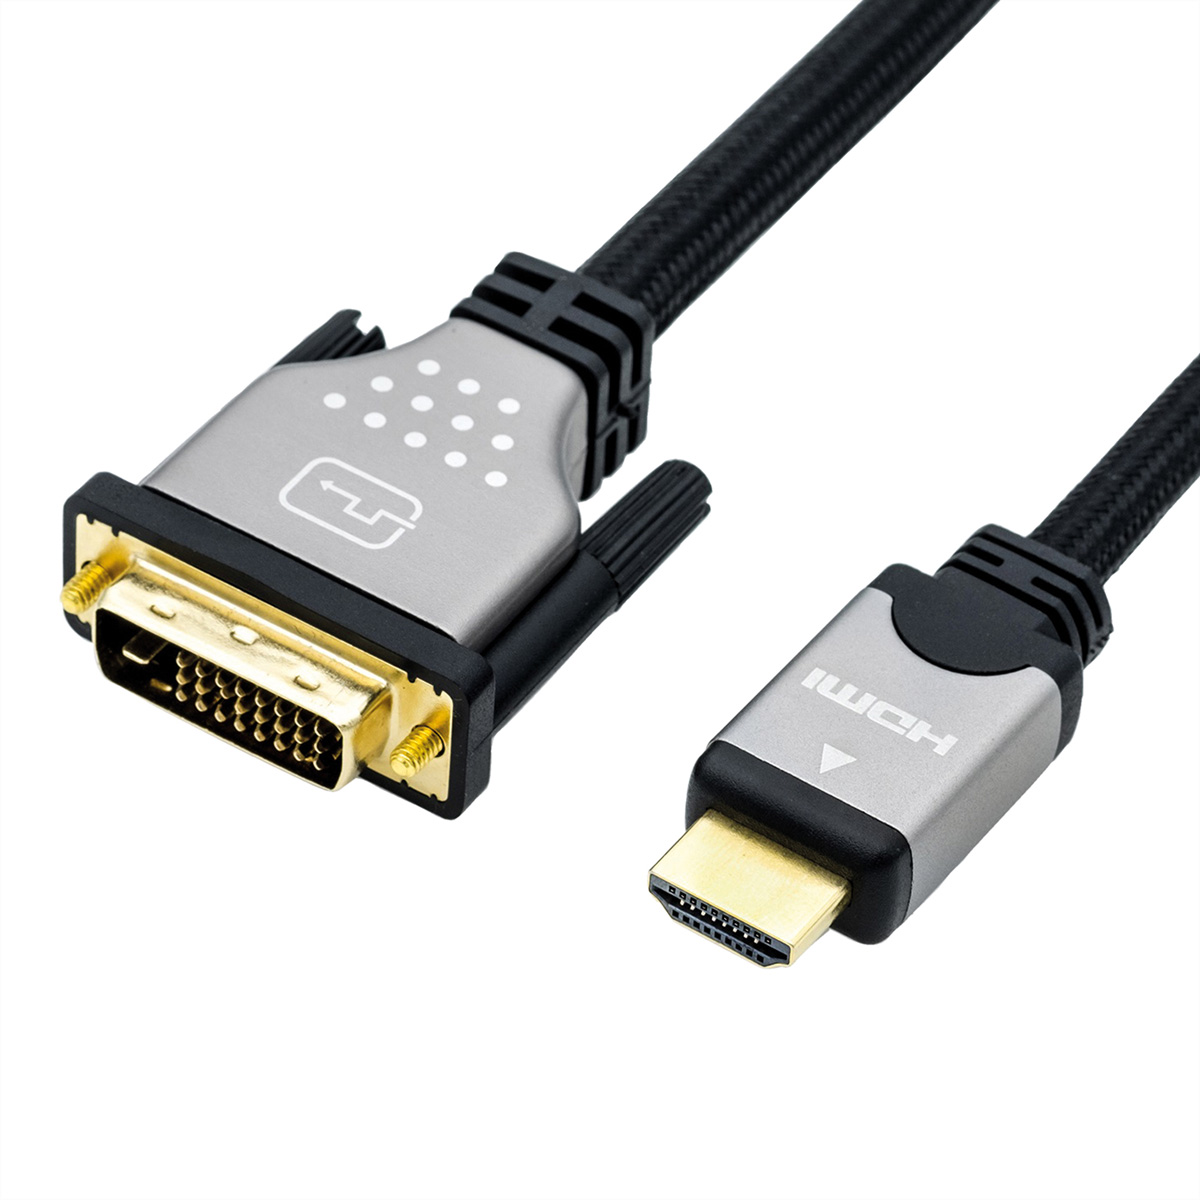 ROLINE - Videokabel - Dual Link - HDMI / DVI - DVI-D (M) bis HDMI (M) - 2 m - abgeschirmt - Schwarz